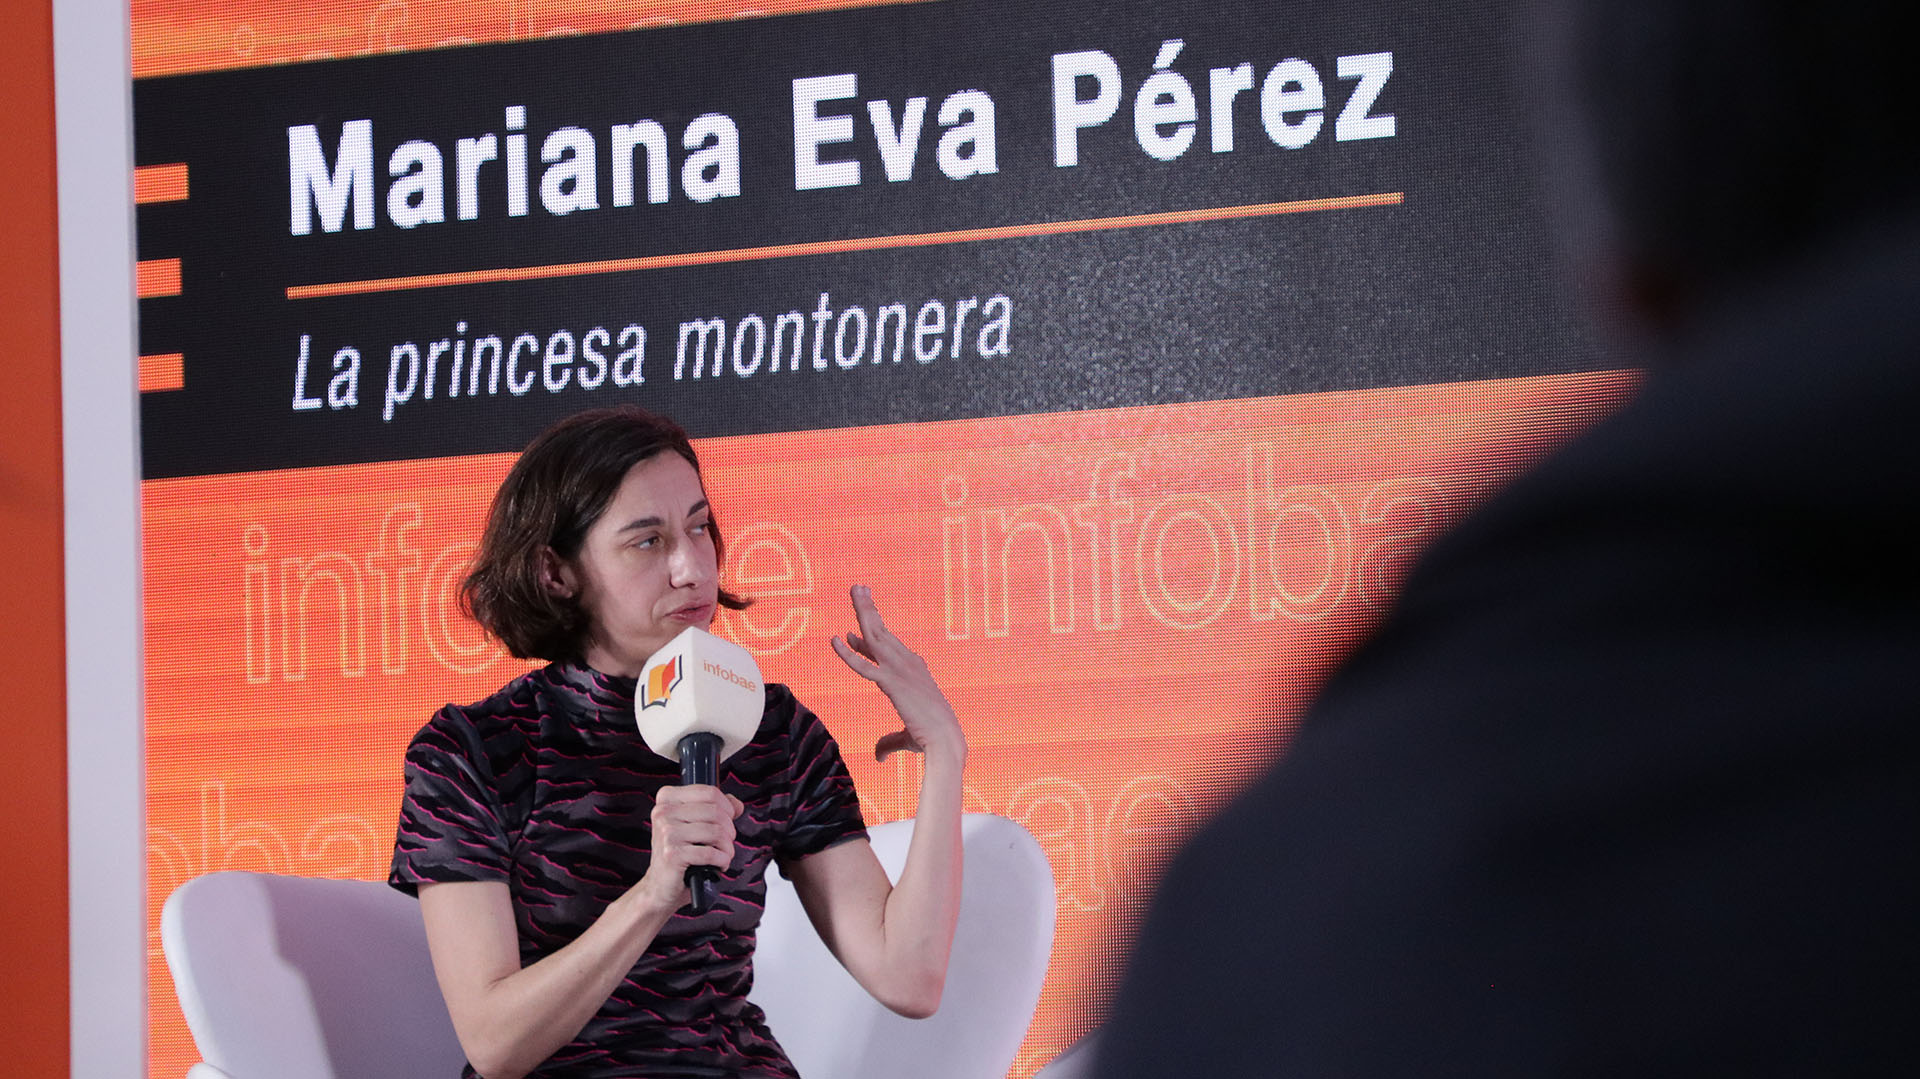 Mariana Eva Perez: maternidad, política y cómo lo dictadura instaló lo siniestro que “nos acompaña hasta el día de hoy”